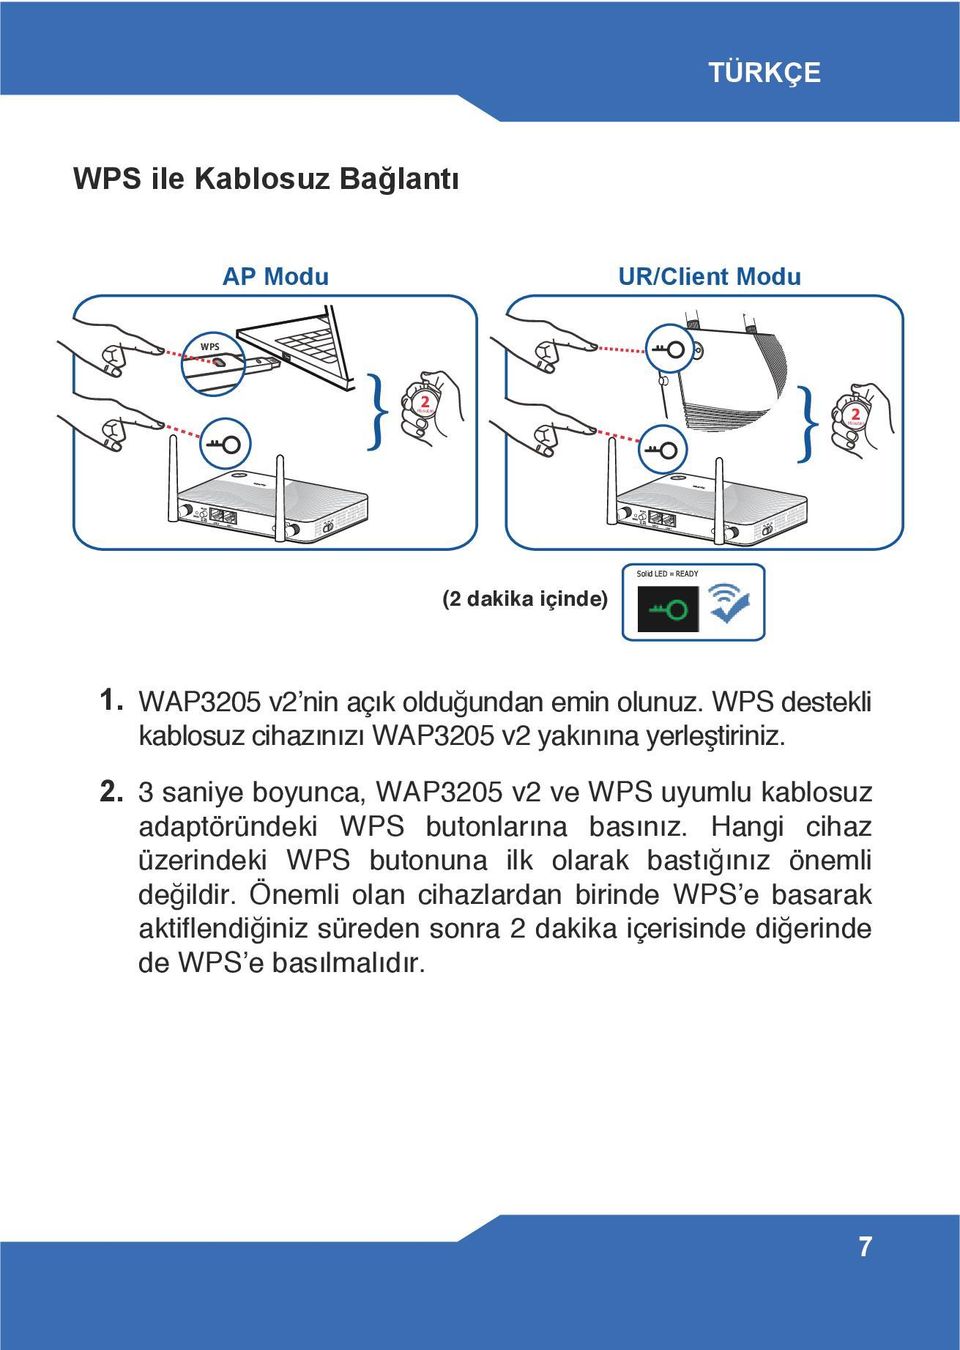 3 saniye boyunca, WAP3205 v2 ve WPS uyumlu kablosuz adaptöründeki WPS butonlarına basınız.